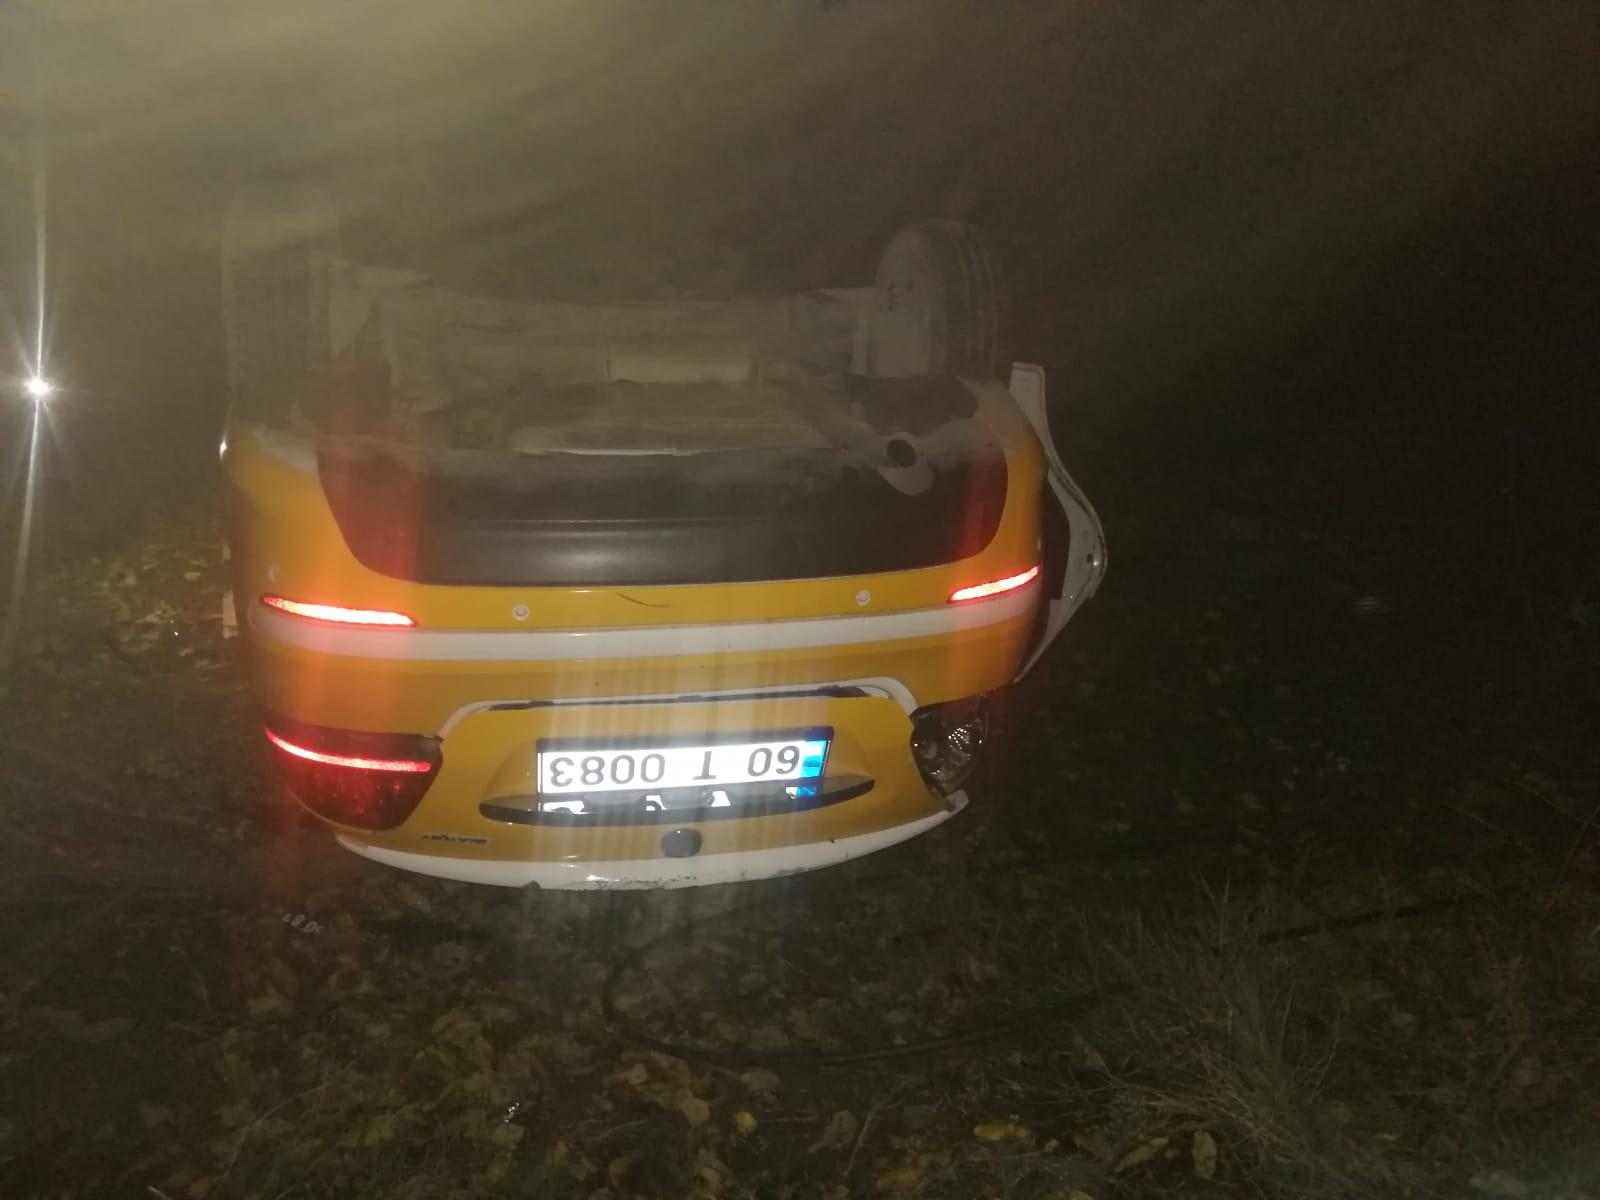 Tokat’ta direğe çarpan taksinin sürücüsü öldü, 2 kişi yaralandı